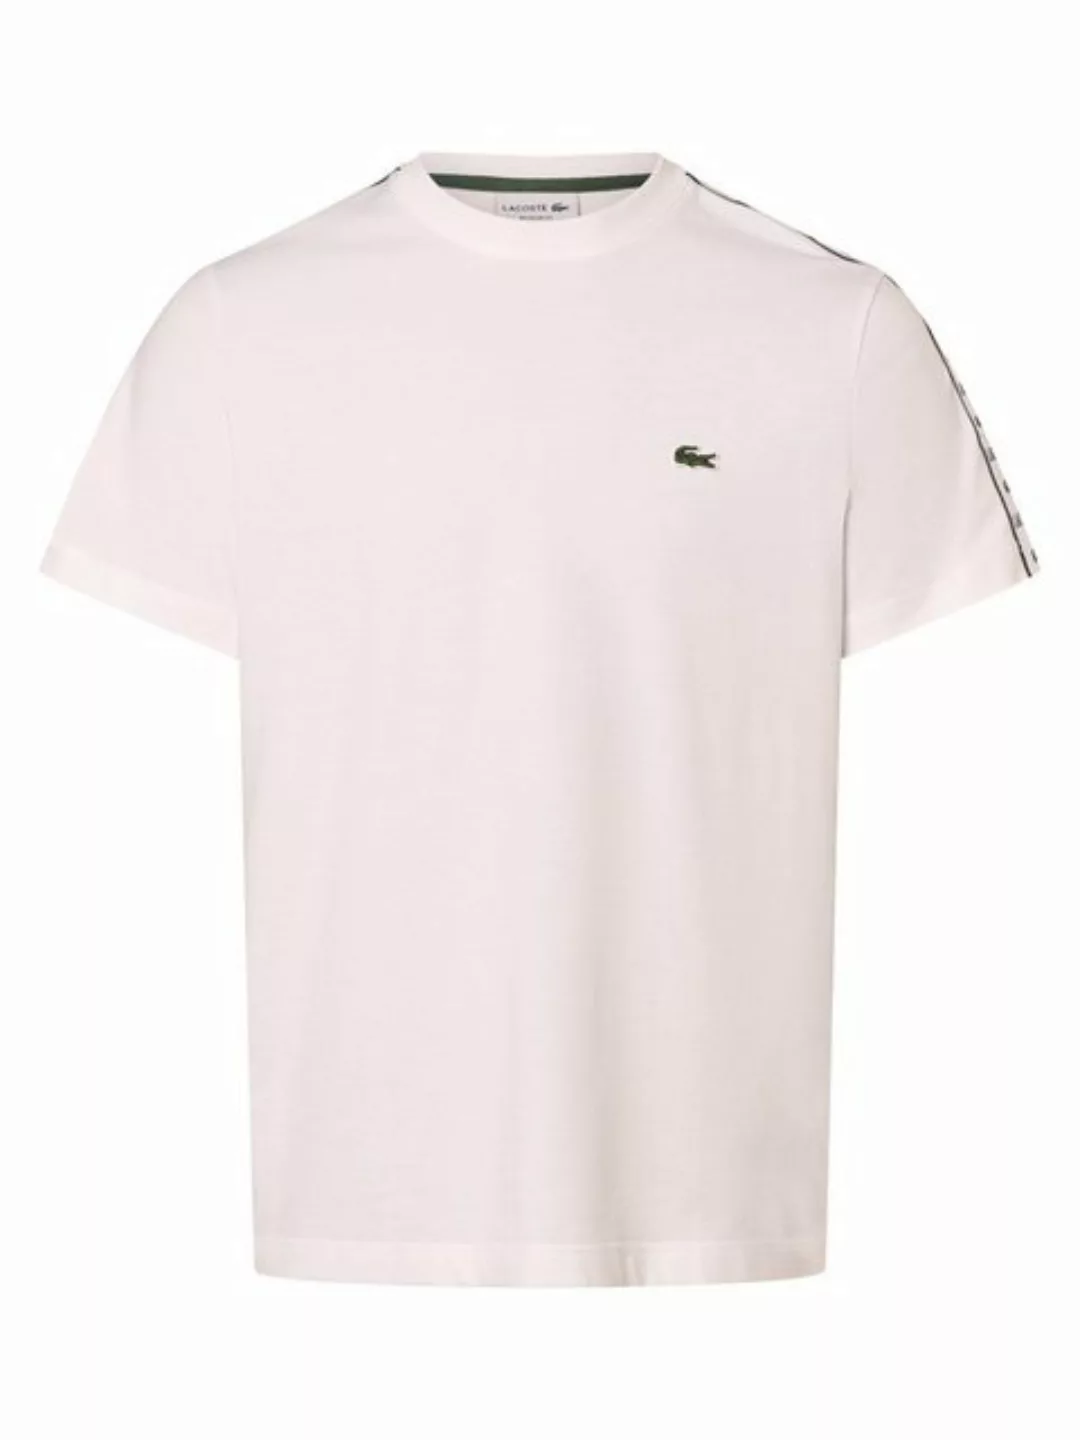 Lacoste T-Shirt T-SHIRT mit großem Print auf der Brust günstig online kaufen